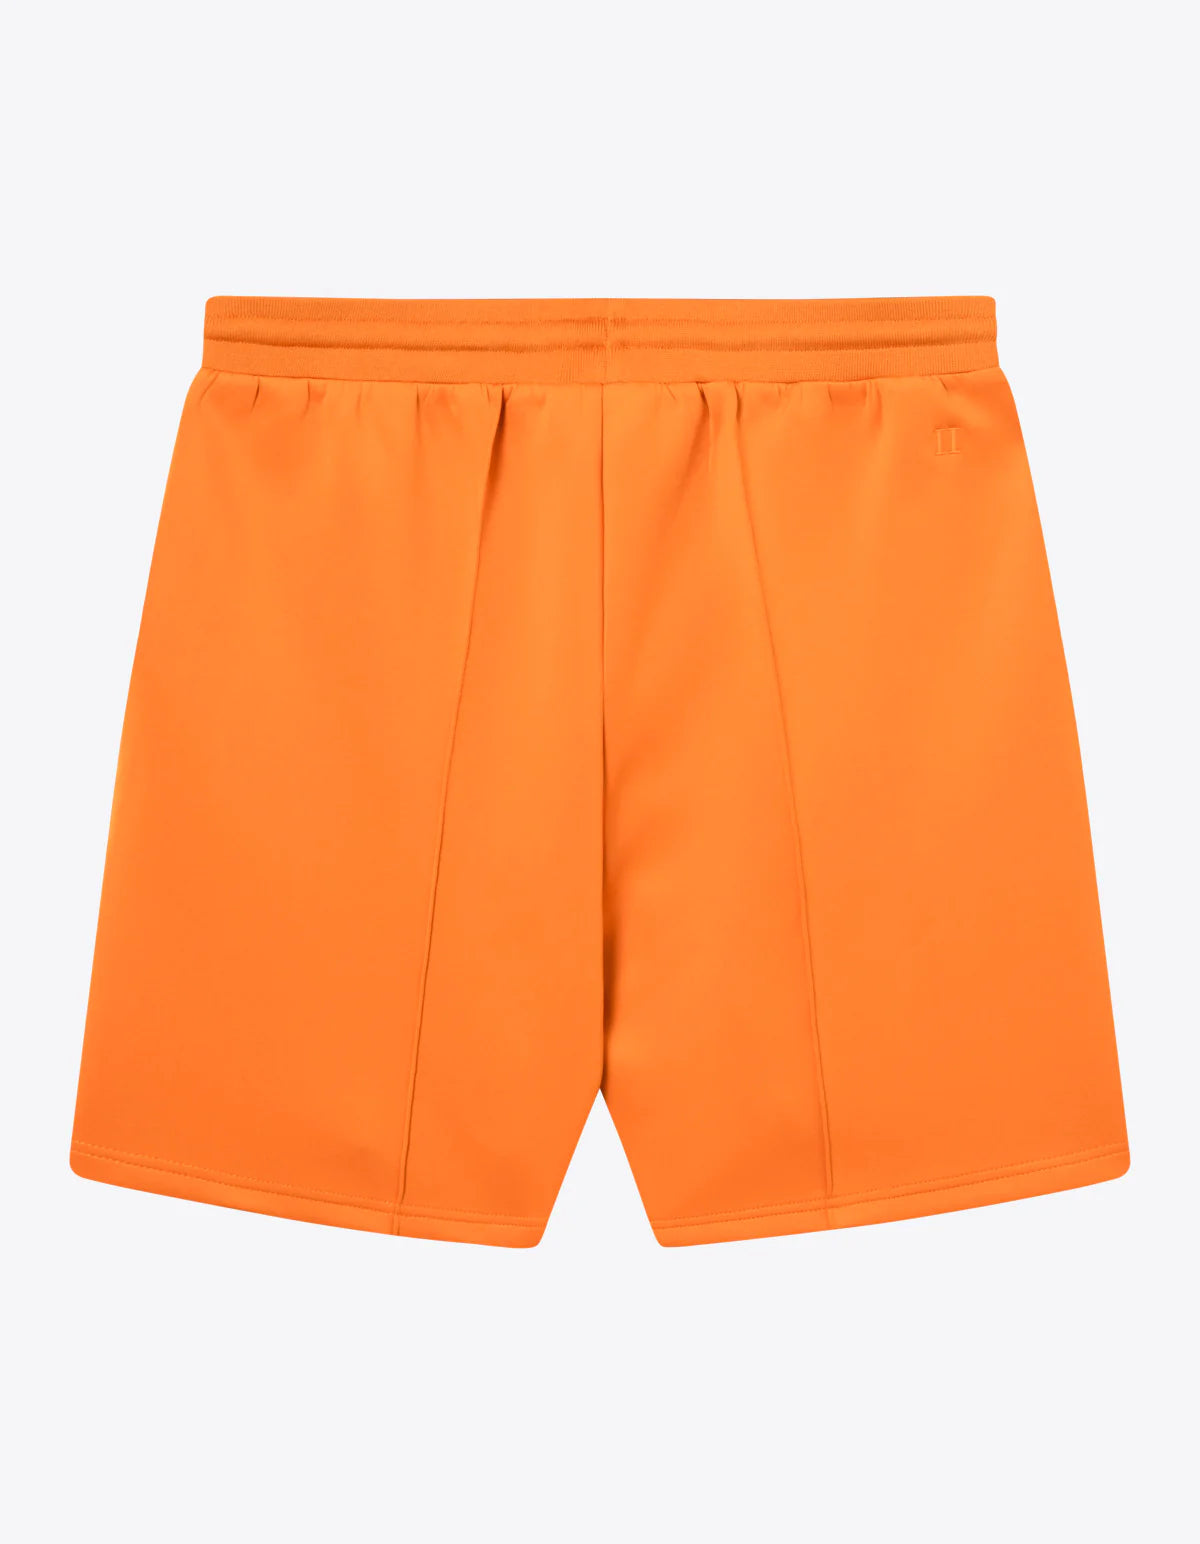 Ballier Track Shorts - Dusty Orange